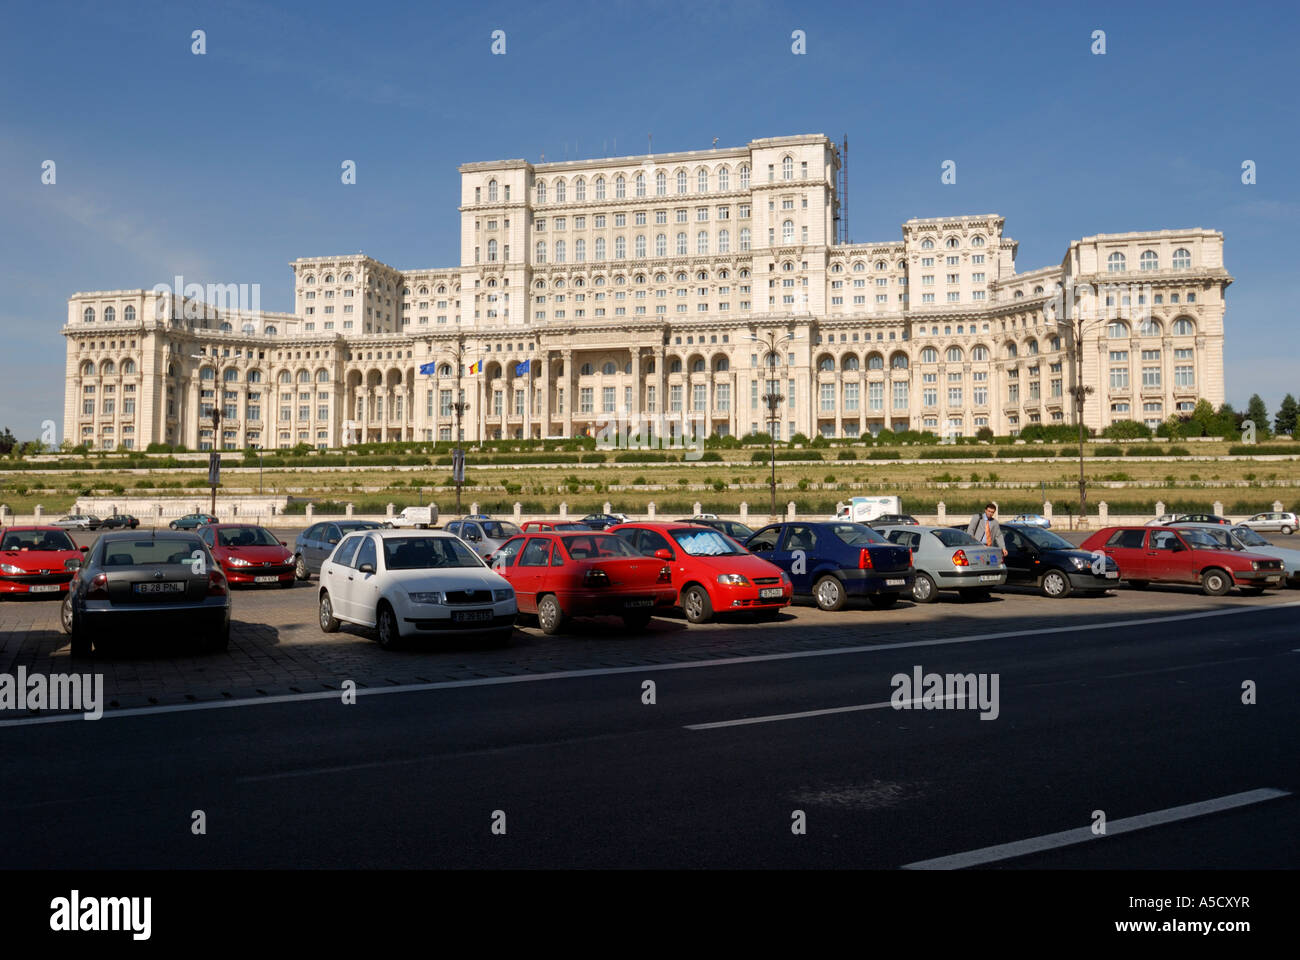 ROMANIA BUCHAREST. Palace of the Parliament, former House of the People (Casa Poporului - Palatul Parlamentului) Stock Photo